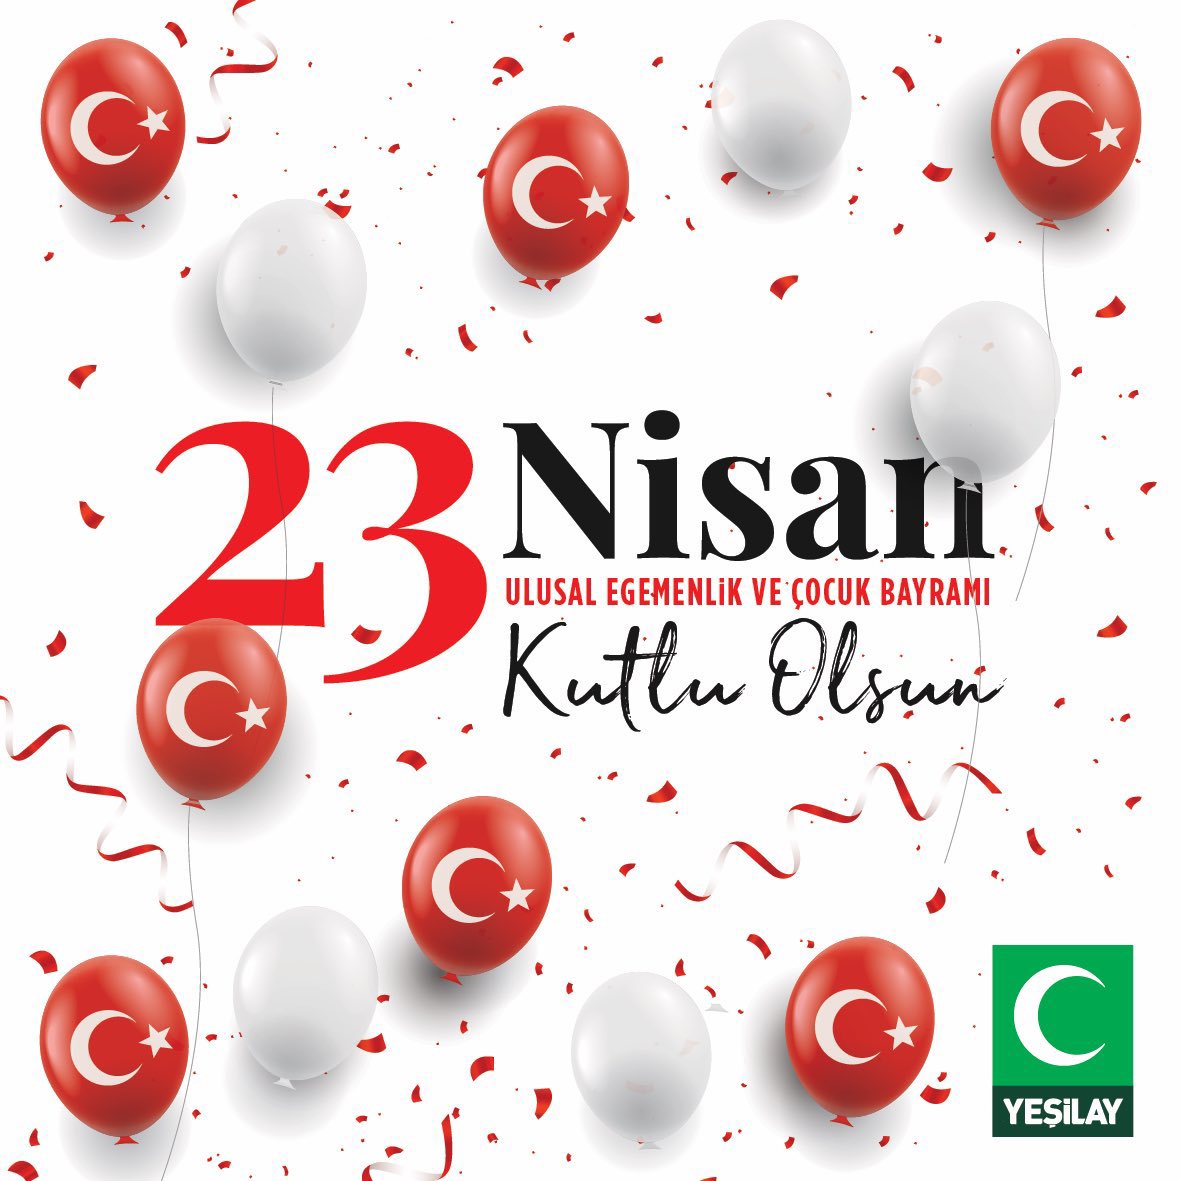 Egemenliğimizin en parlak temsili olan Türkiye Büyük Millet Meclisi’nin açılışı vesilesiyle Ulu Önder Gazi Mustafa Kemal Atatürk’ün çocuklara armağan ettiği 23 Nisan Ulusal Egemenlik ve Çocuk Bayramı kutlu olsun. #23NisanUlusalEgemenlikveÇocukBayramı #Yeşilay #23Nisan